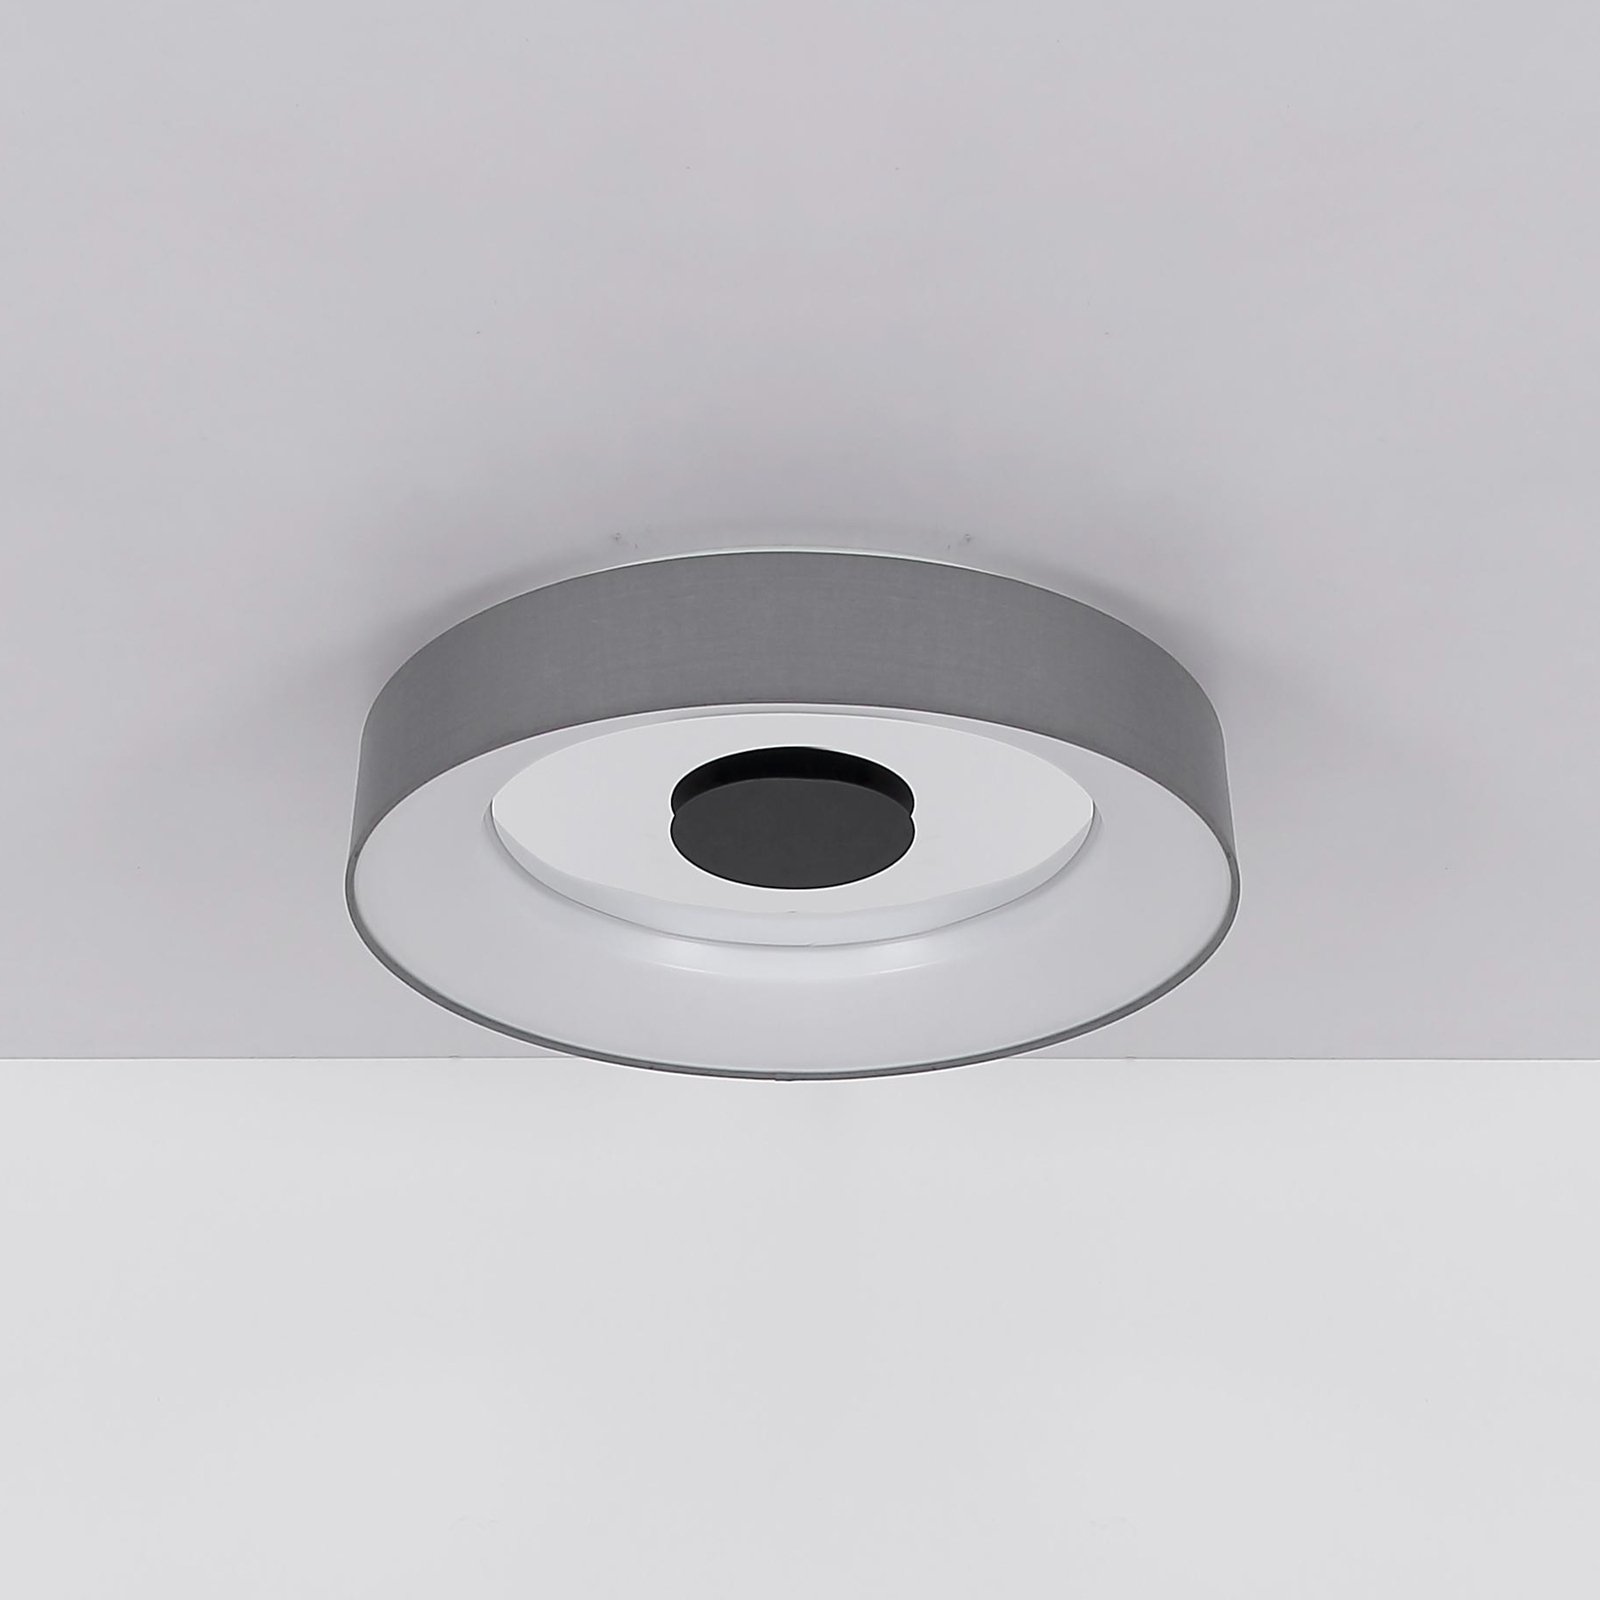 Smart-LED-Deckenleuchte Terpsa, weiß/grau, Ø 46,8 cm, Stoff